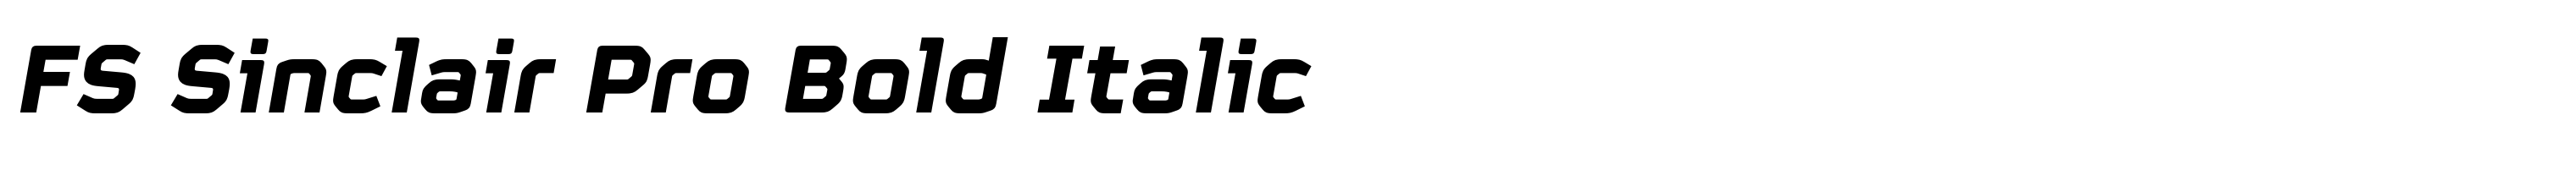 FS Sinclair Pro Bold Italic